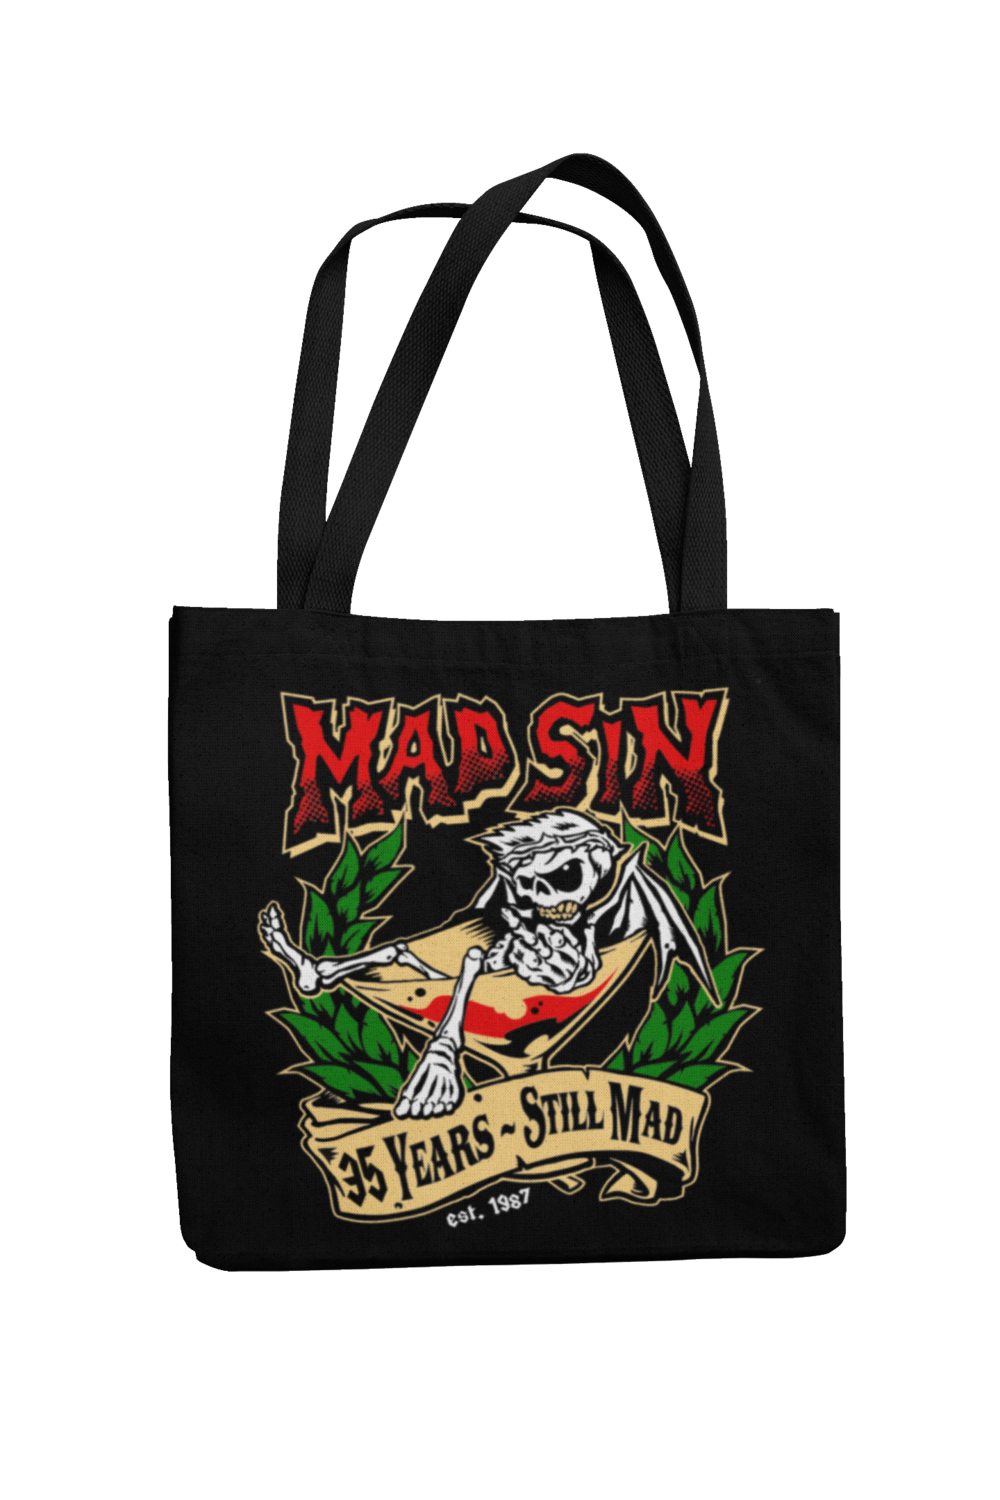 MAD SIN Cotton Bag still mad Round logo